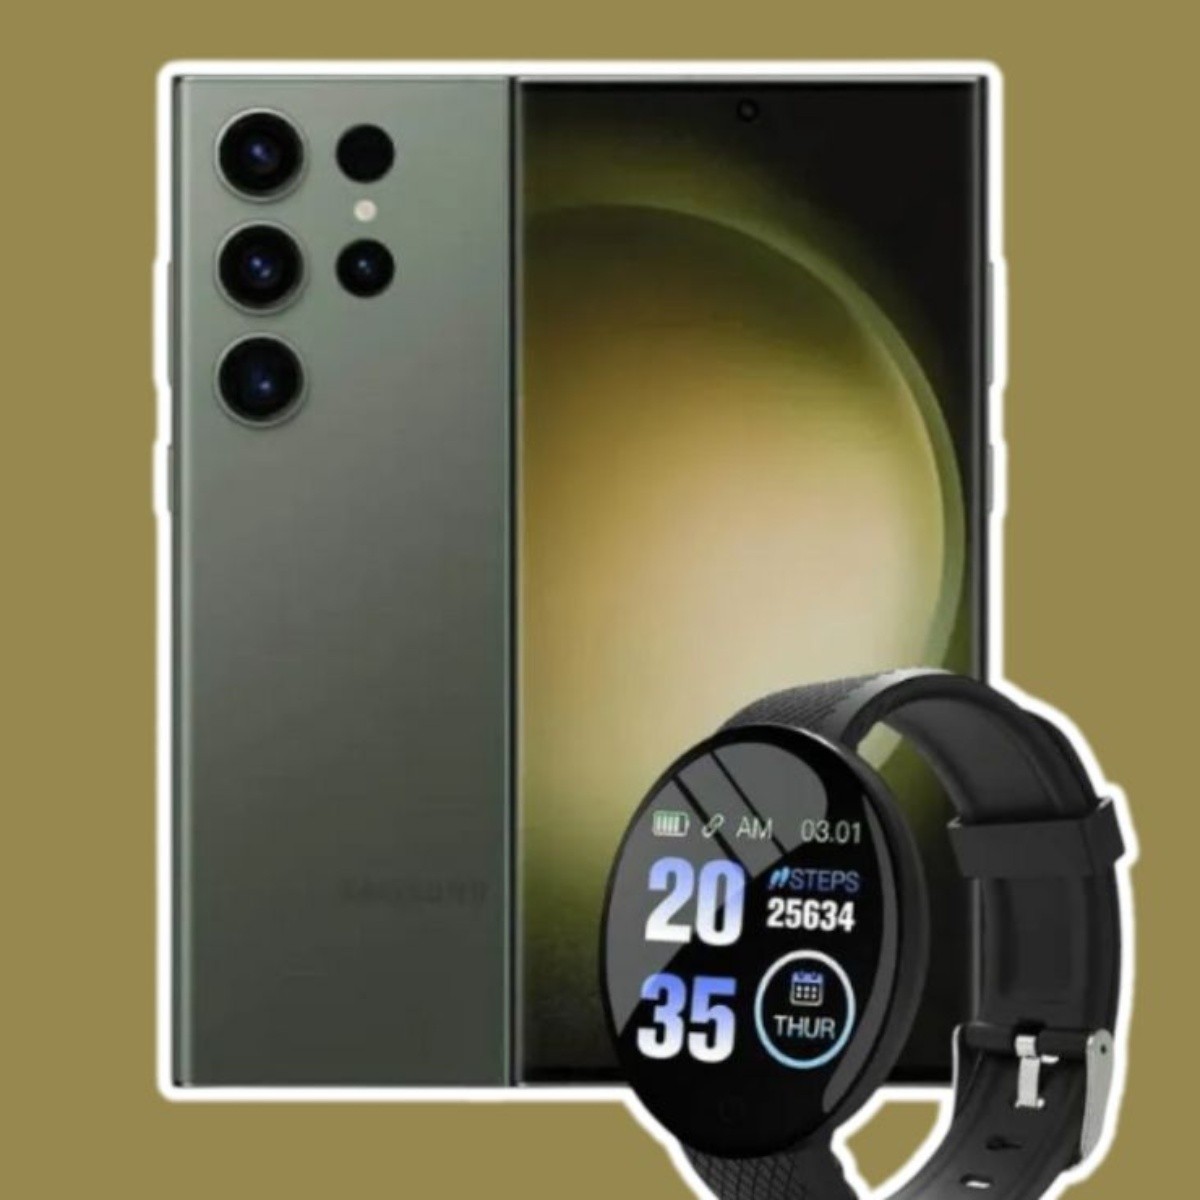 android, oferta: elektra baja celular samsung galaxy s23 ultra 512gb + smartwatch con $7,750 de descuento y 6msi